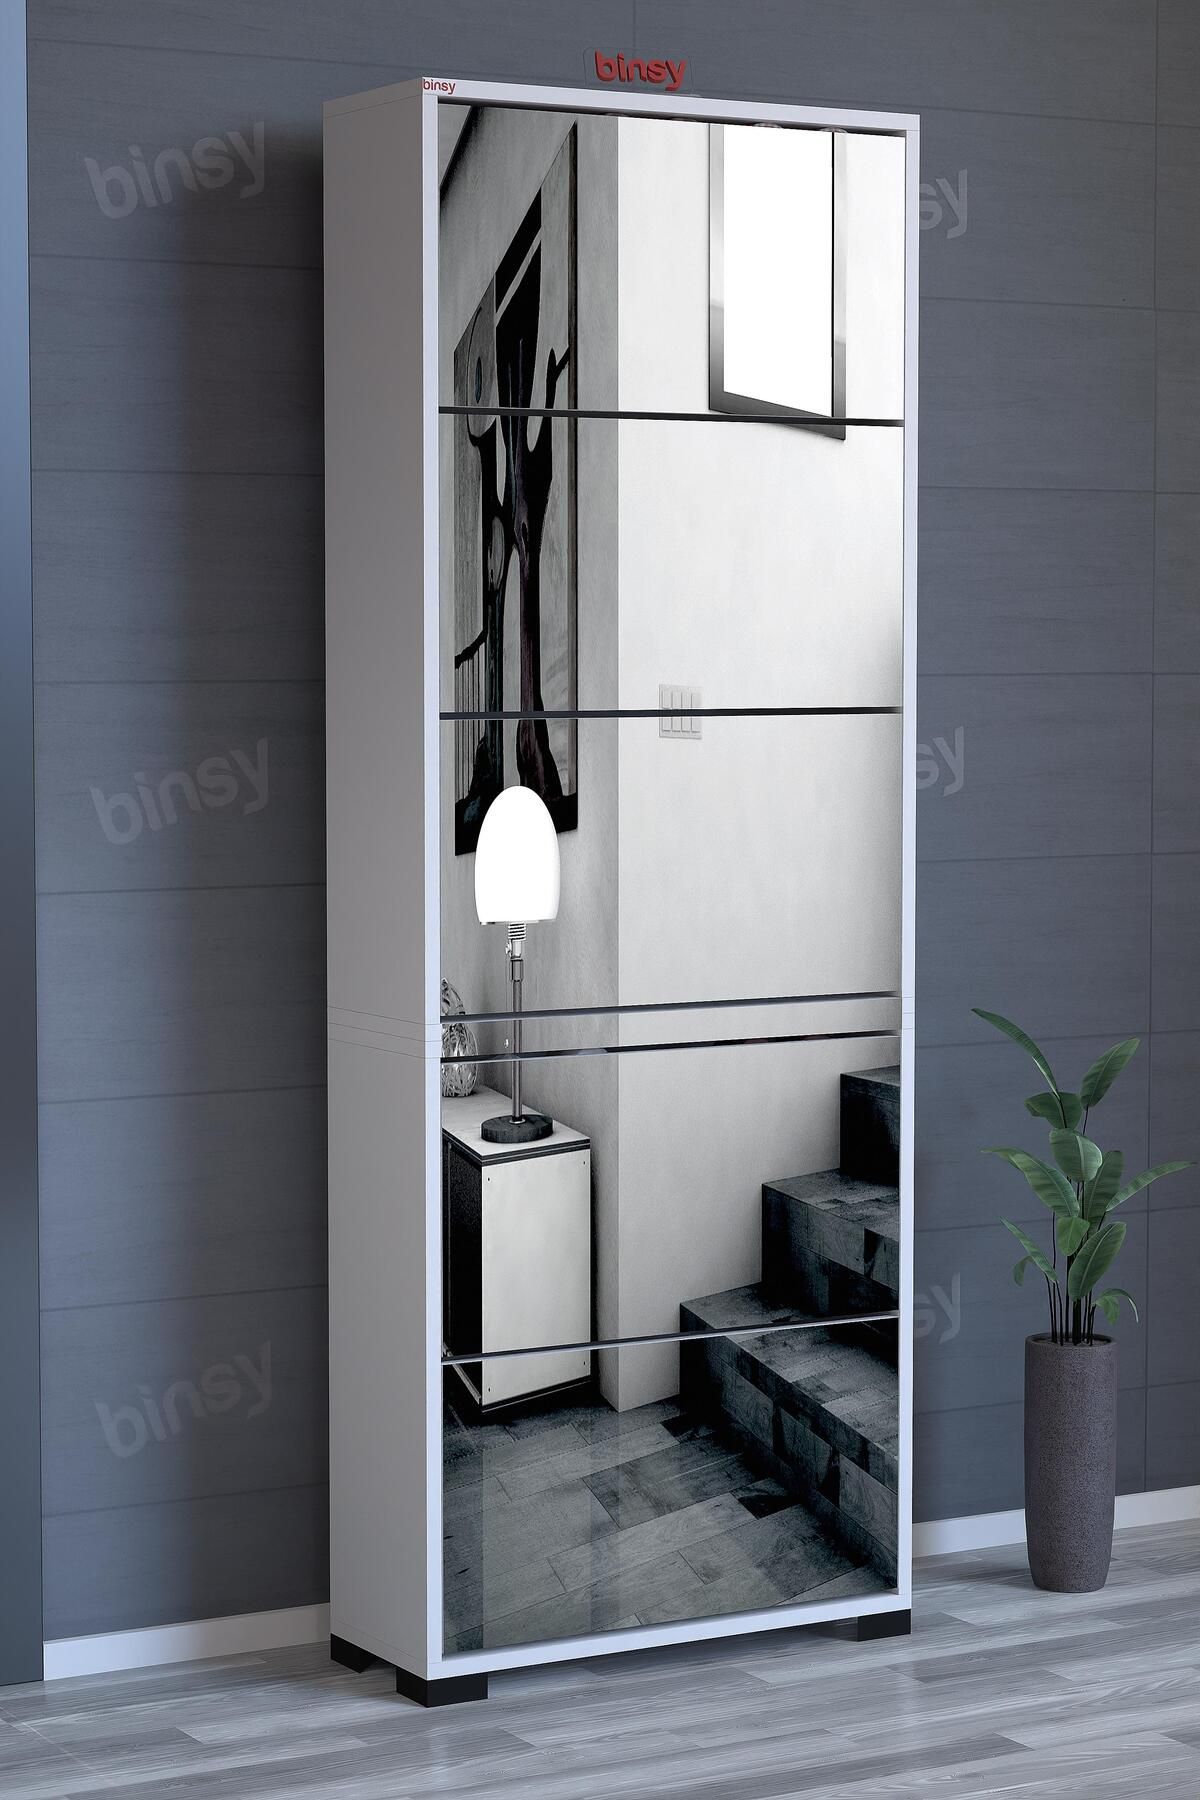 Binsy Avrasya Düşer Kapaklı 5 Raflı Kapaklı Elit Aynalı Ayakkabılık Ve Boy Aynası Ayaklı 176 X 64'cm Beyaz